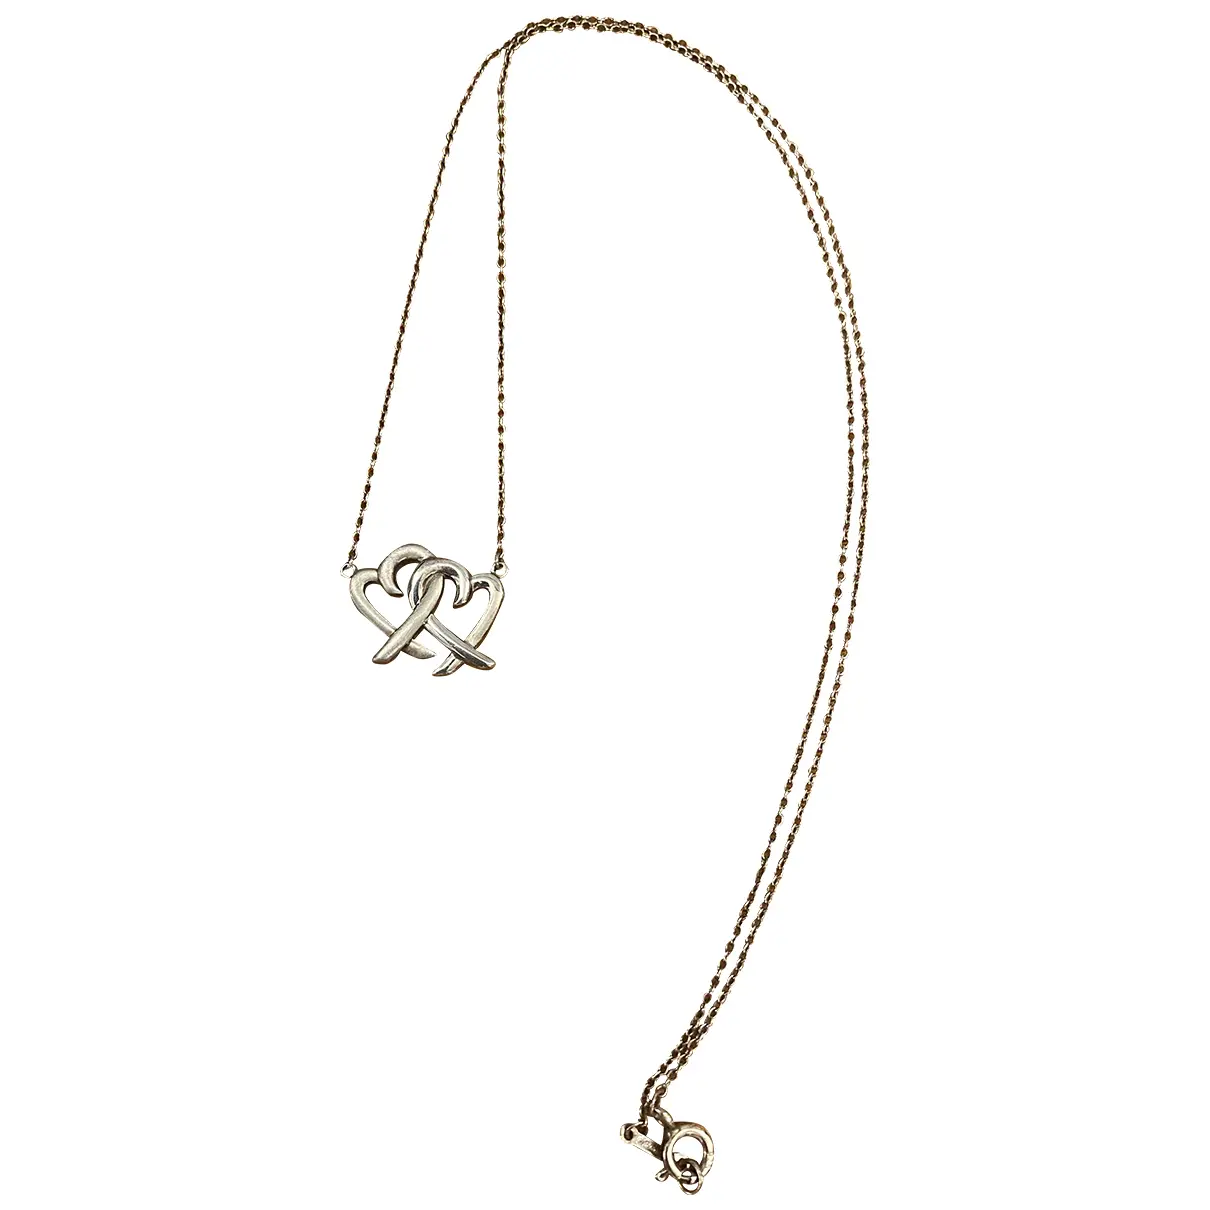 Elsa Peretti silver necklace Tiffany & Co